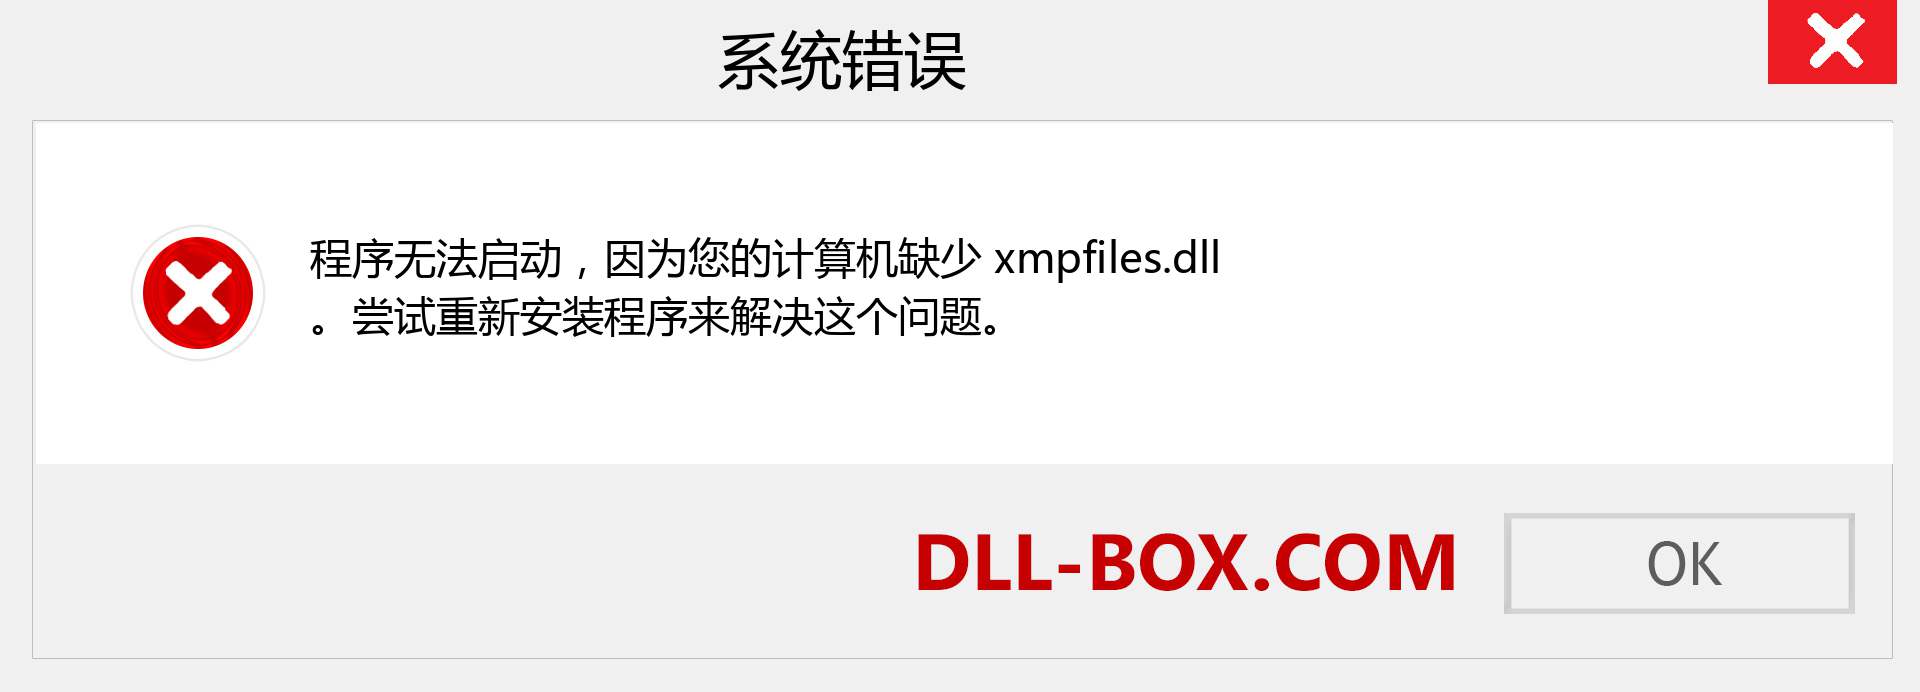 xmpfiles.dll 文件丢失？。 适用于 Windows 7、8、10 的下载 - 修复 Windows、照片、图像上的 xmpfiles dll 丢失错误